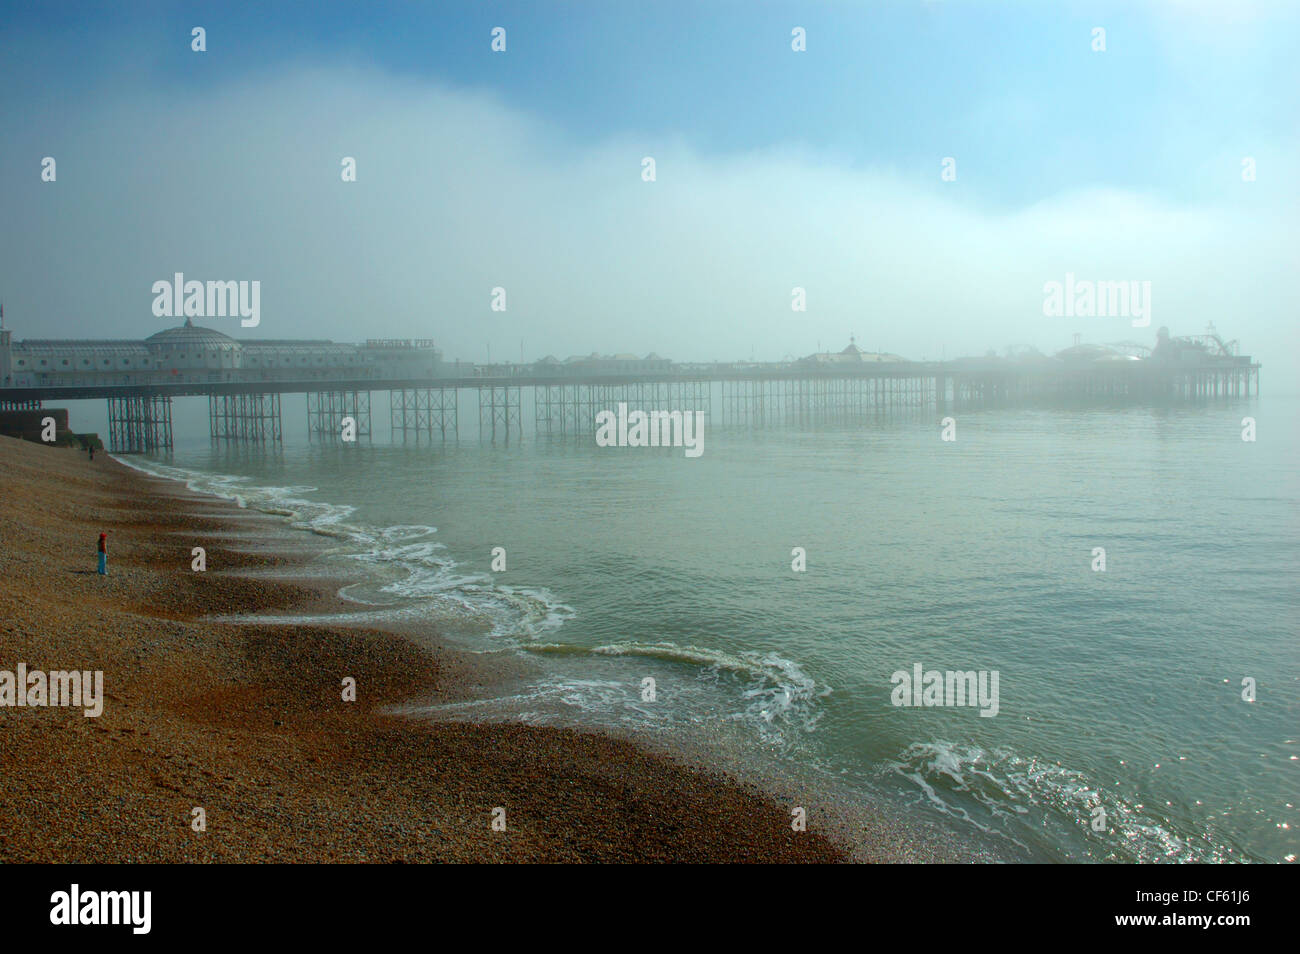 A view towards Brighton Pier through the mist. Stock Photo